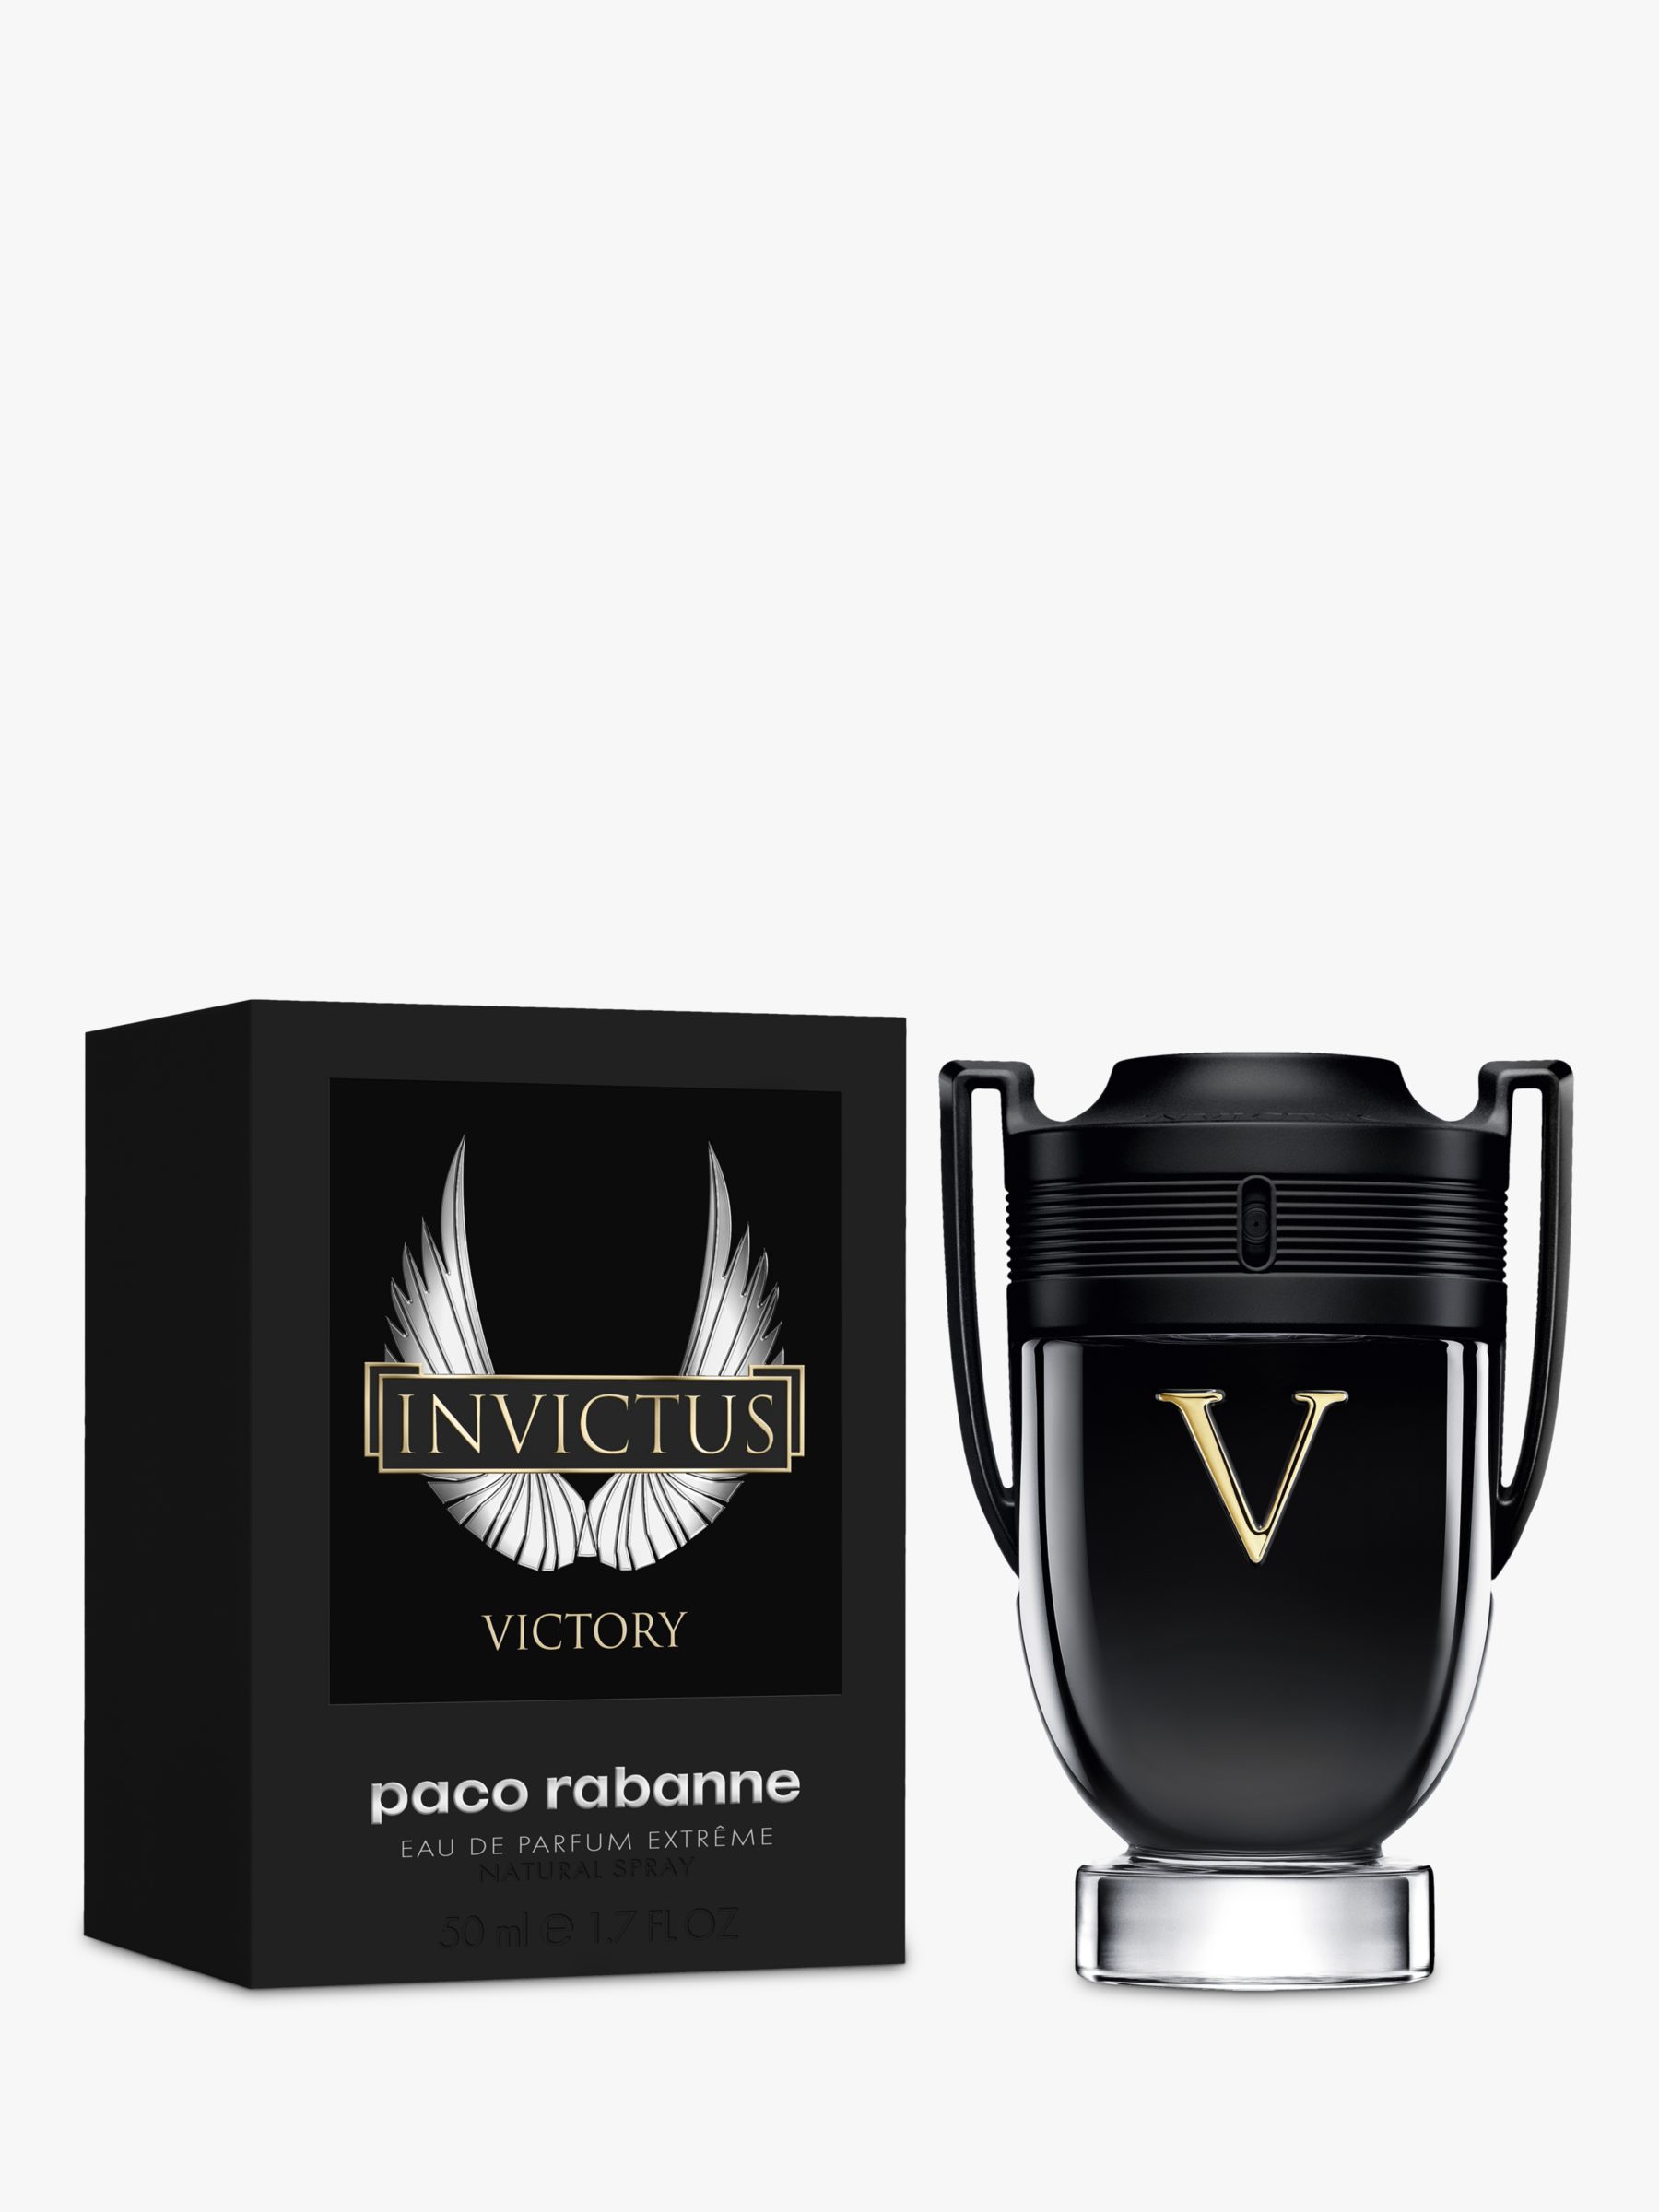 Paco Rabanne Invictus Victory Extreme Eau de Parfum